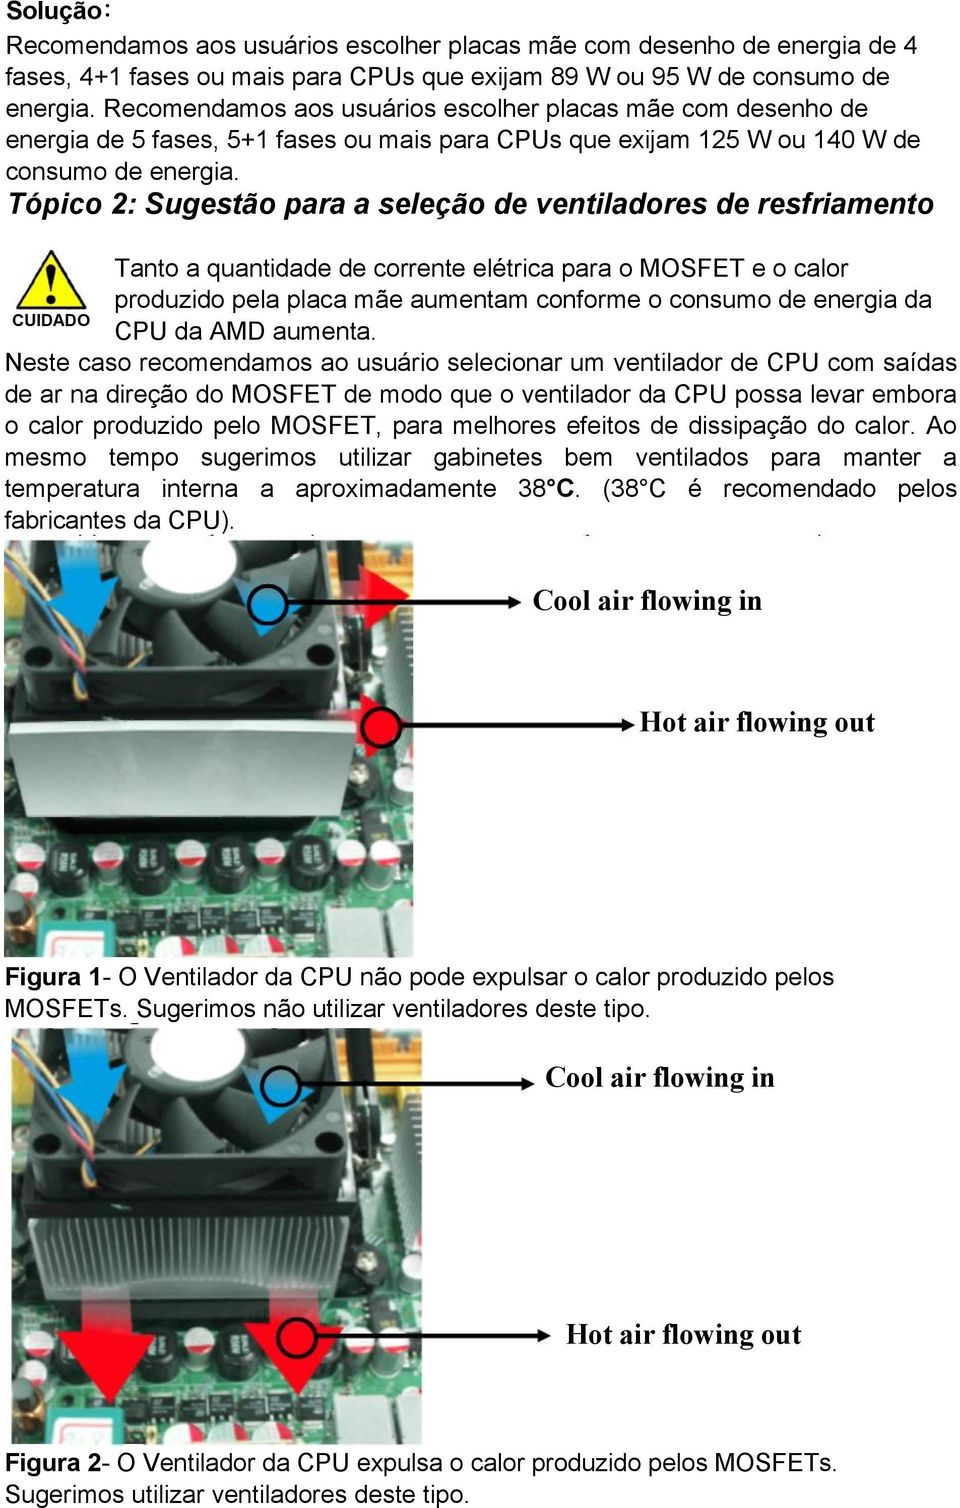 Tópico 2: Sugestão para a seleção de ventiladores de resfriamento Tanto a quantidade de corrente elétrica para o MOSFET e o calor produzido pela placa mãe aumentam conforme o consumo de energia da